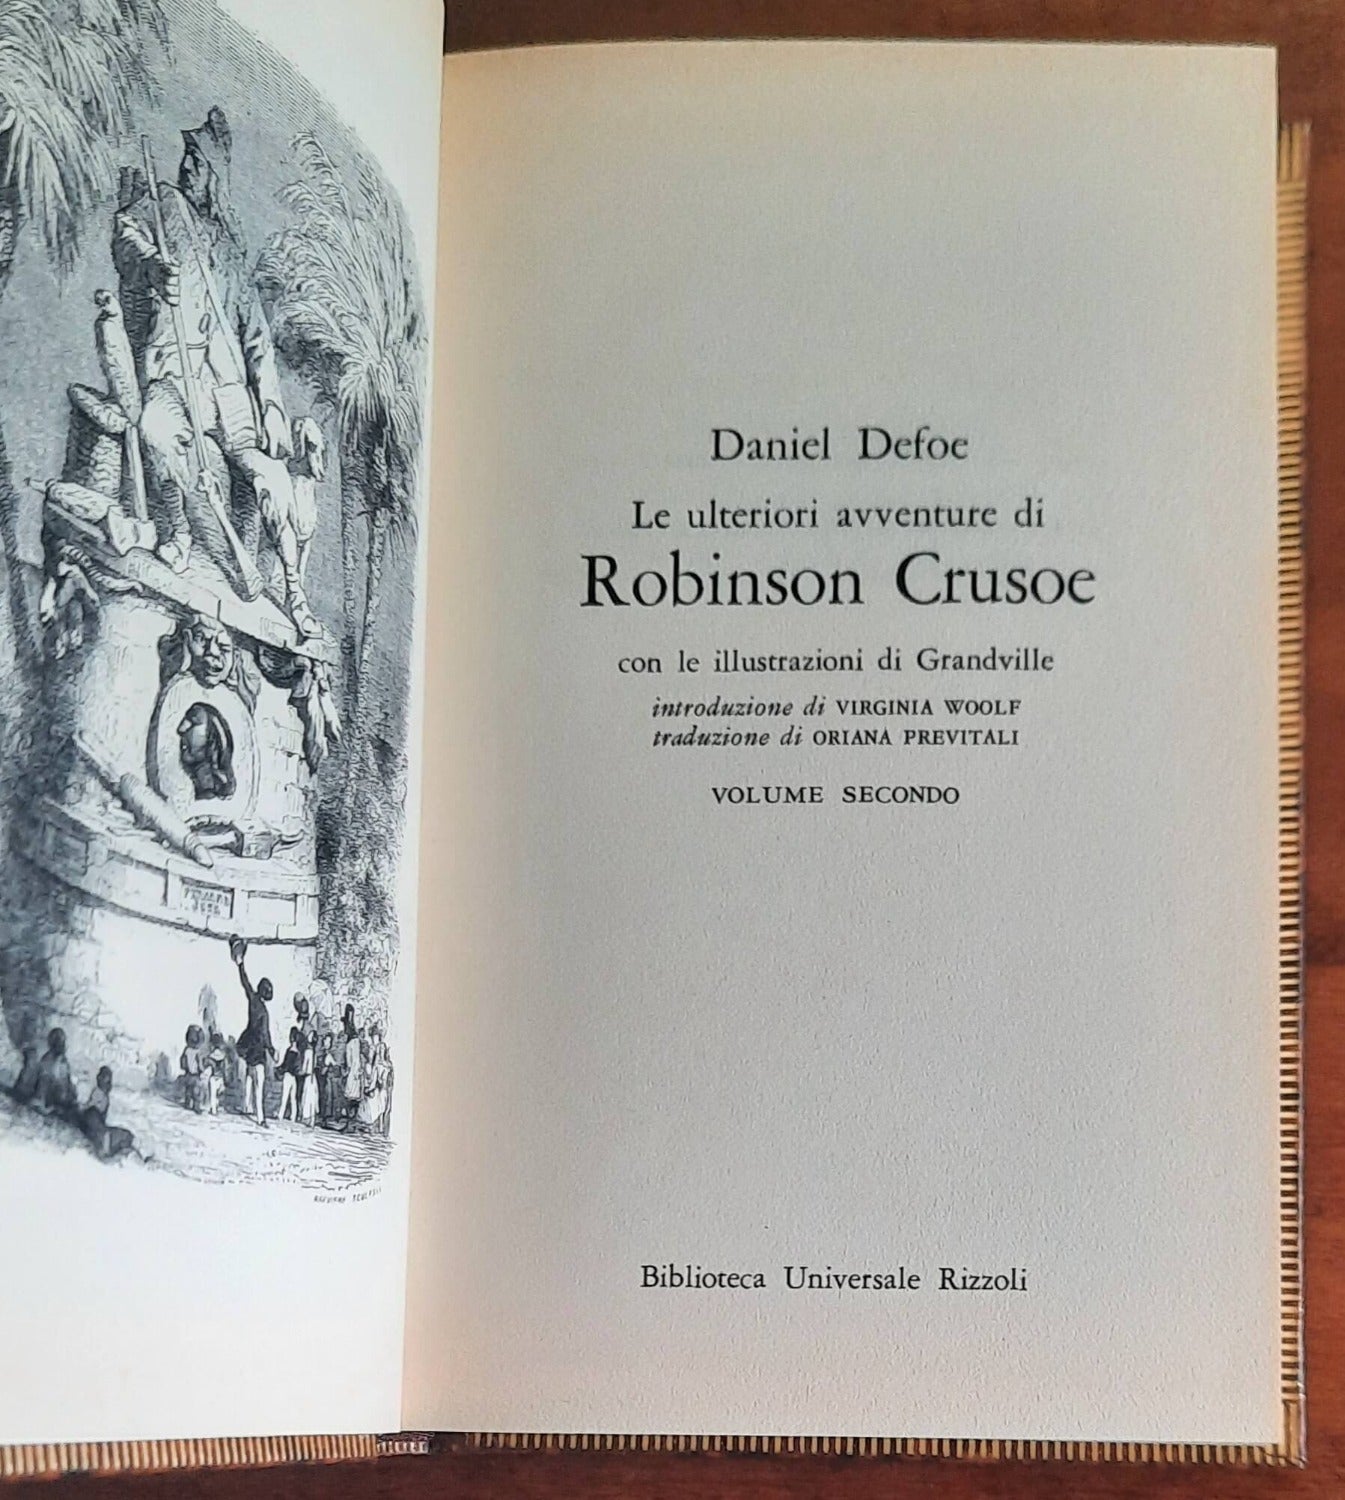 La vita e le strane sorprendenti avventure di Robinson Crusoe - 2 vol.